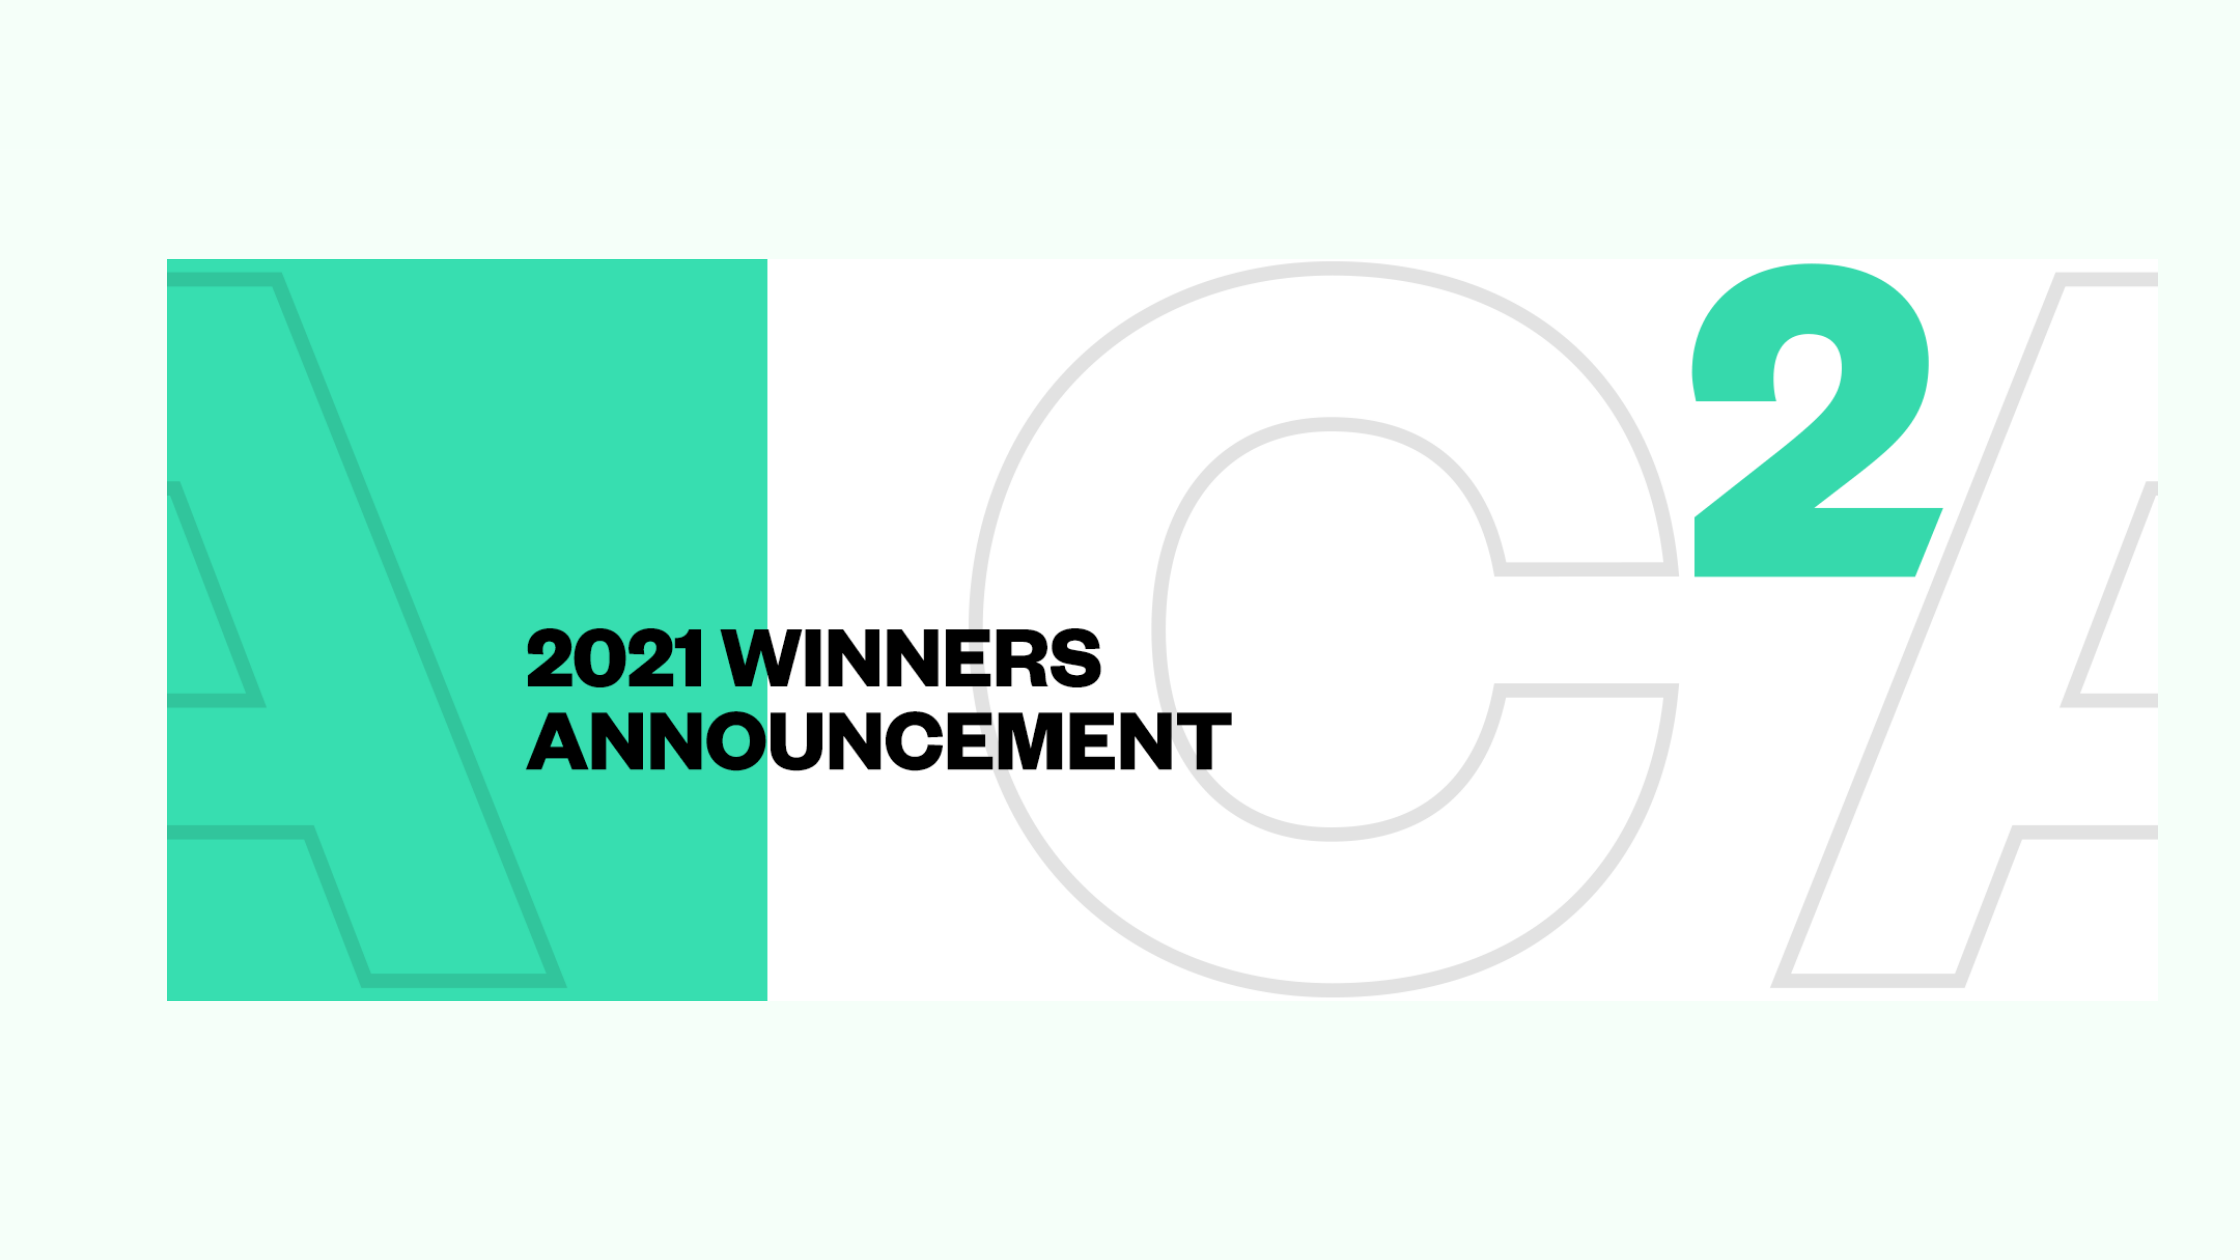 2021 winners banner for news